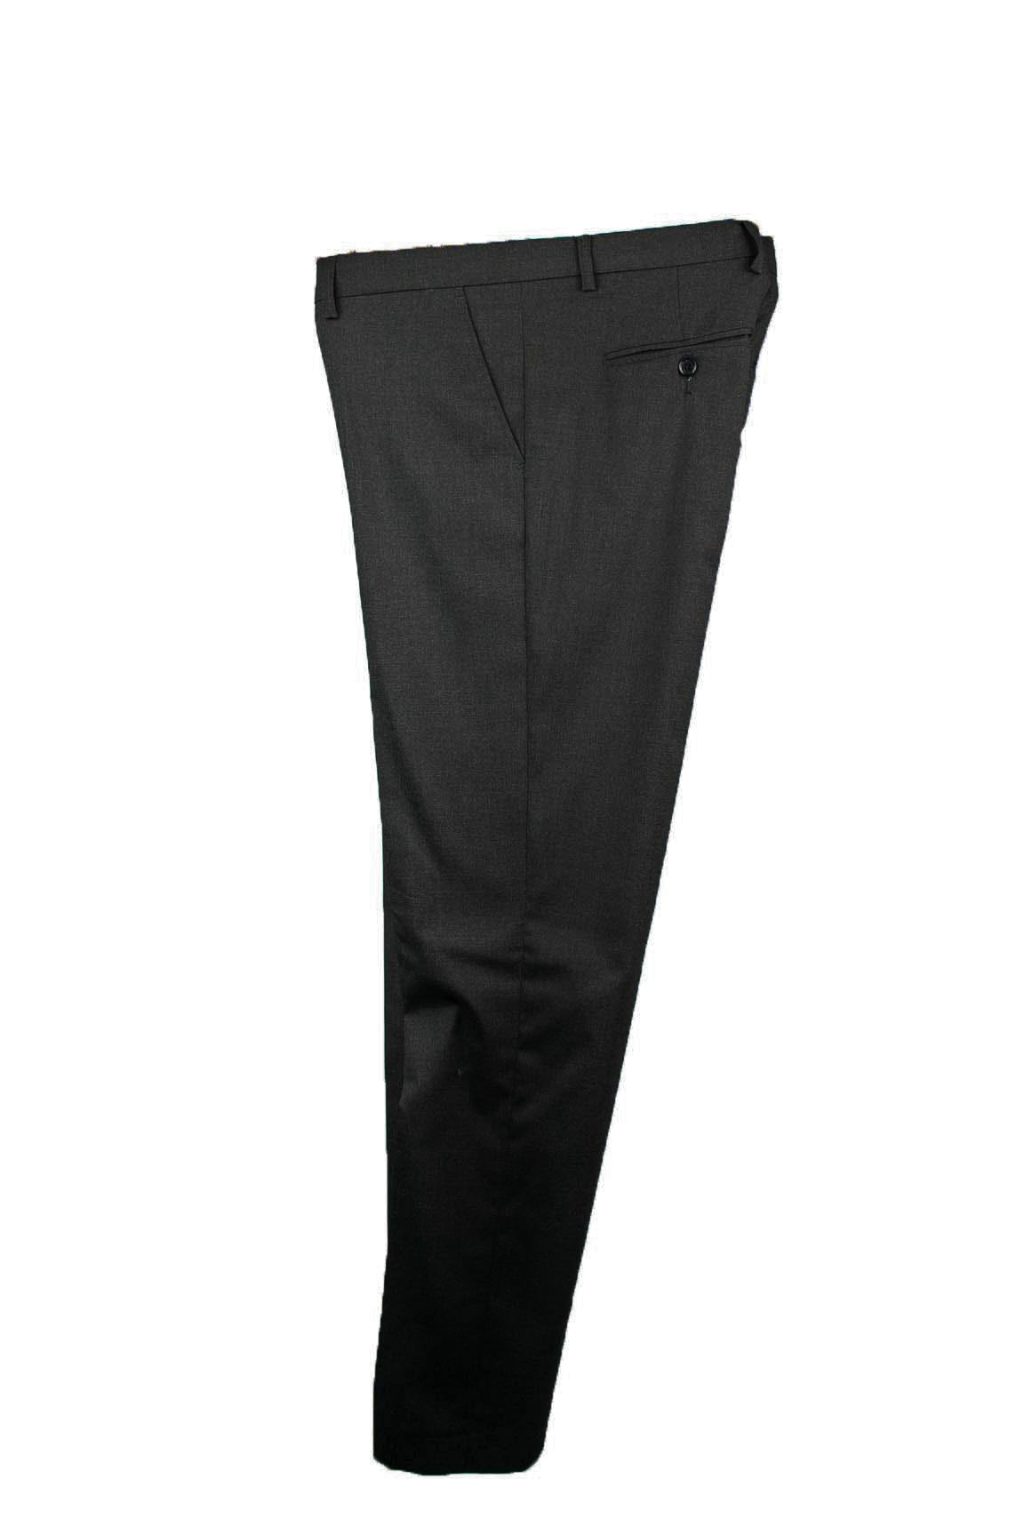 Ανδρικό Παντελόνι Comfort Fit 2-101G-2033 Ανθρακί